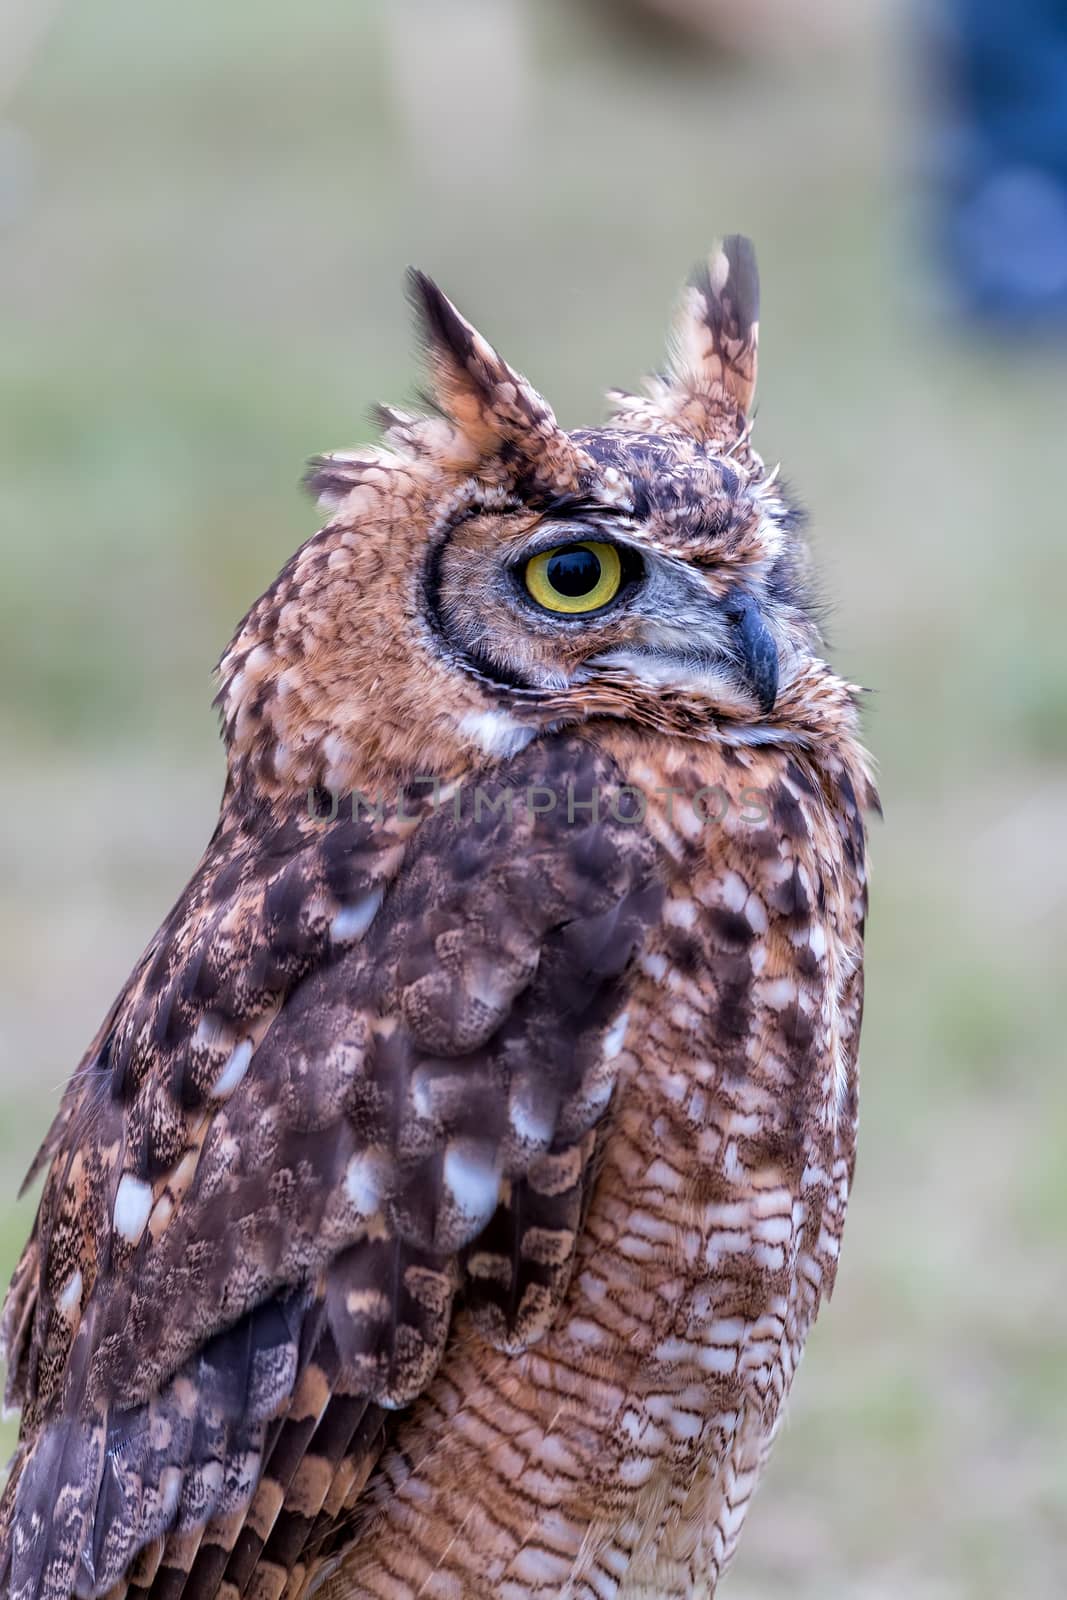 Closeup of Long-eared owl by Digoarpi